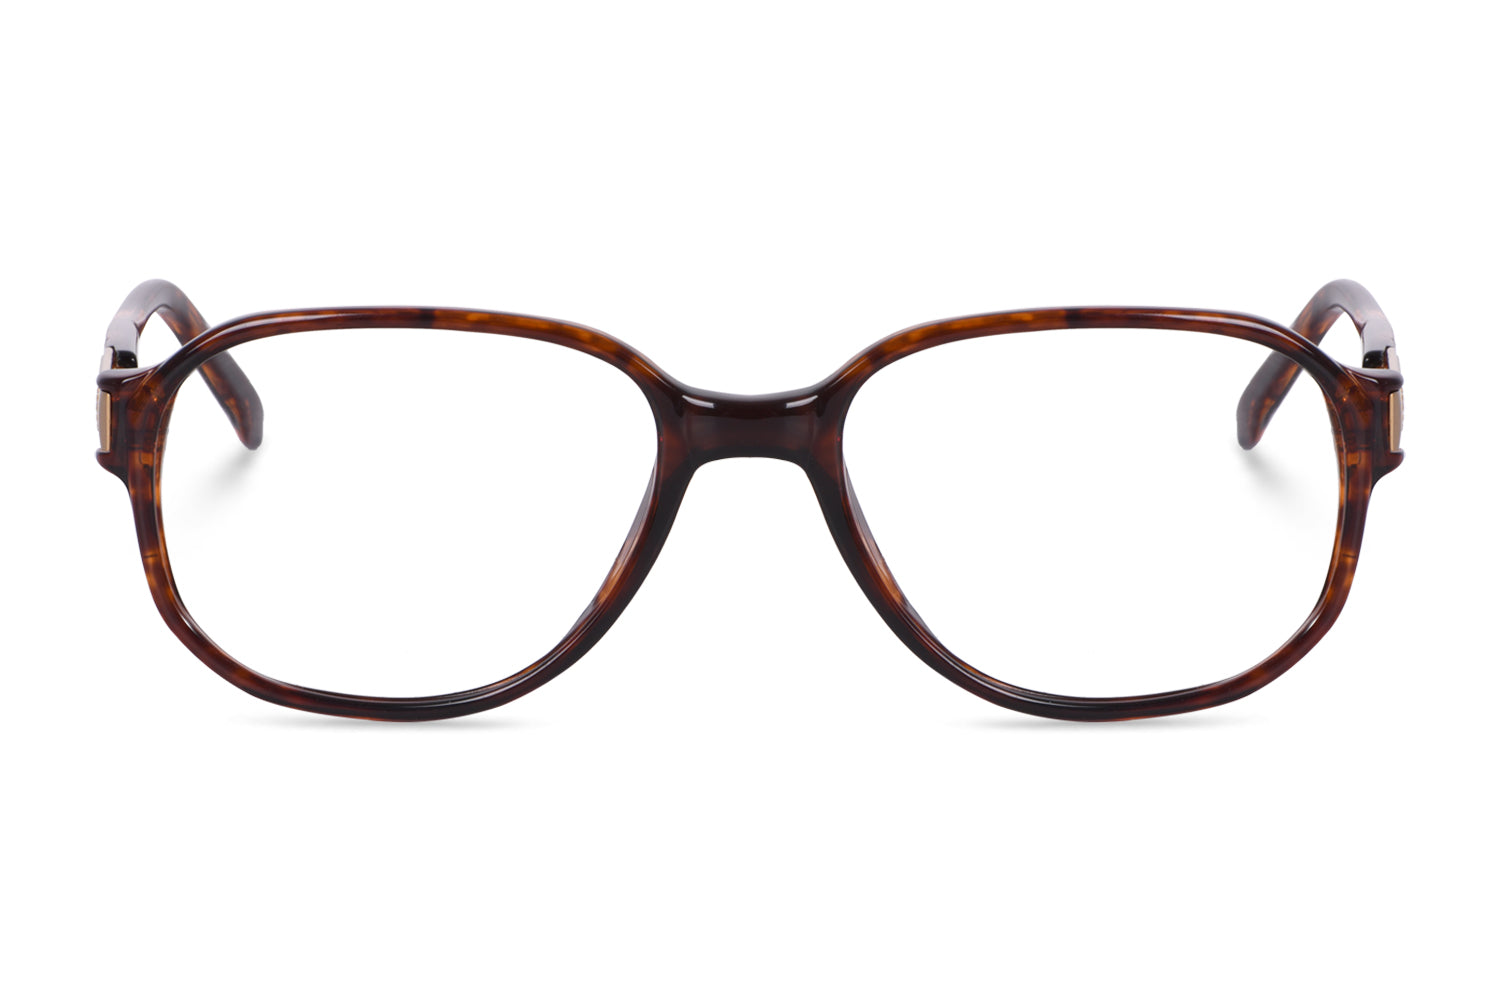 Square Eyeglasses Frame